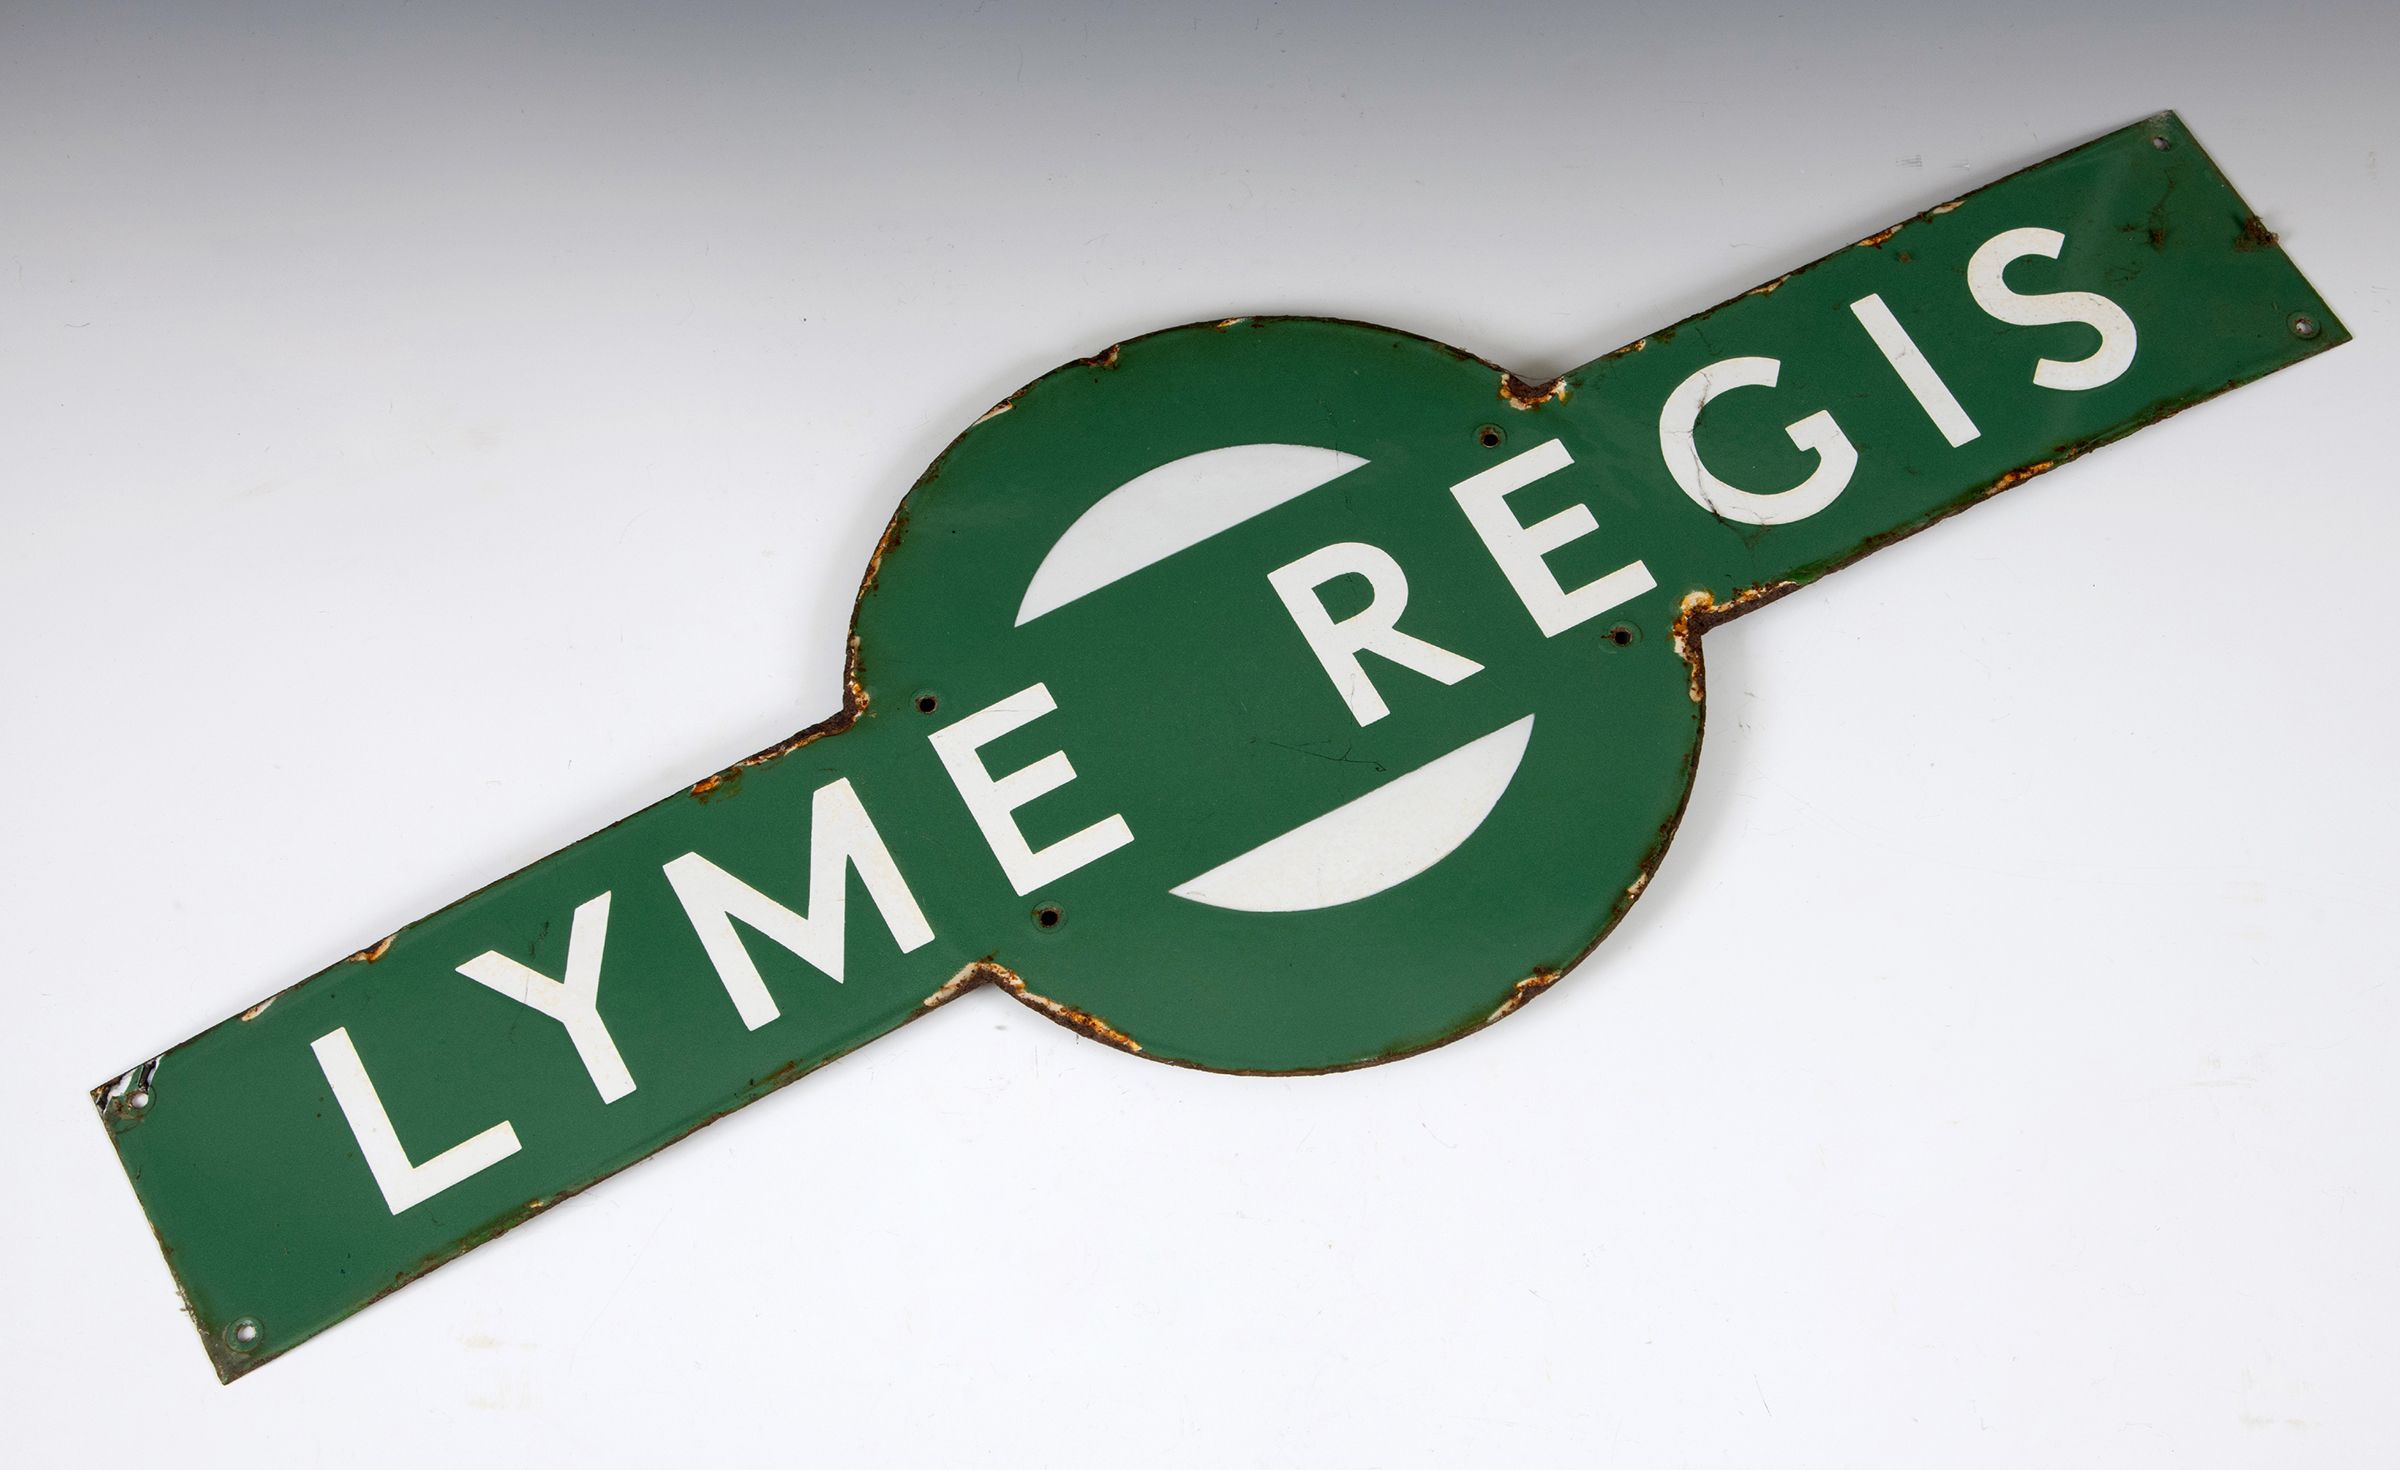 Lyme Regis target railway sign